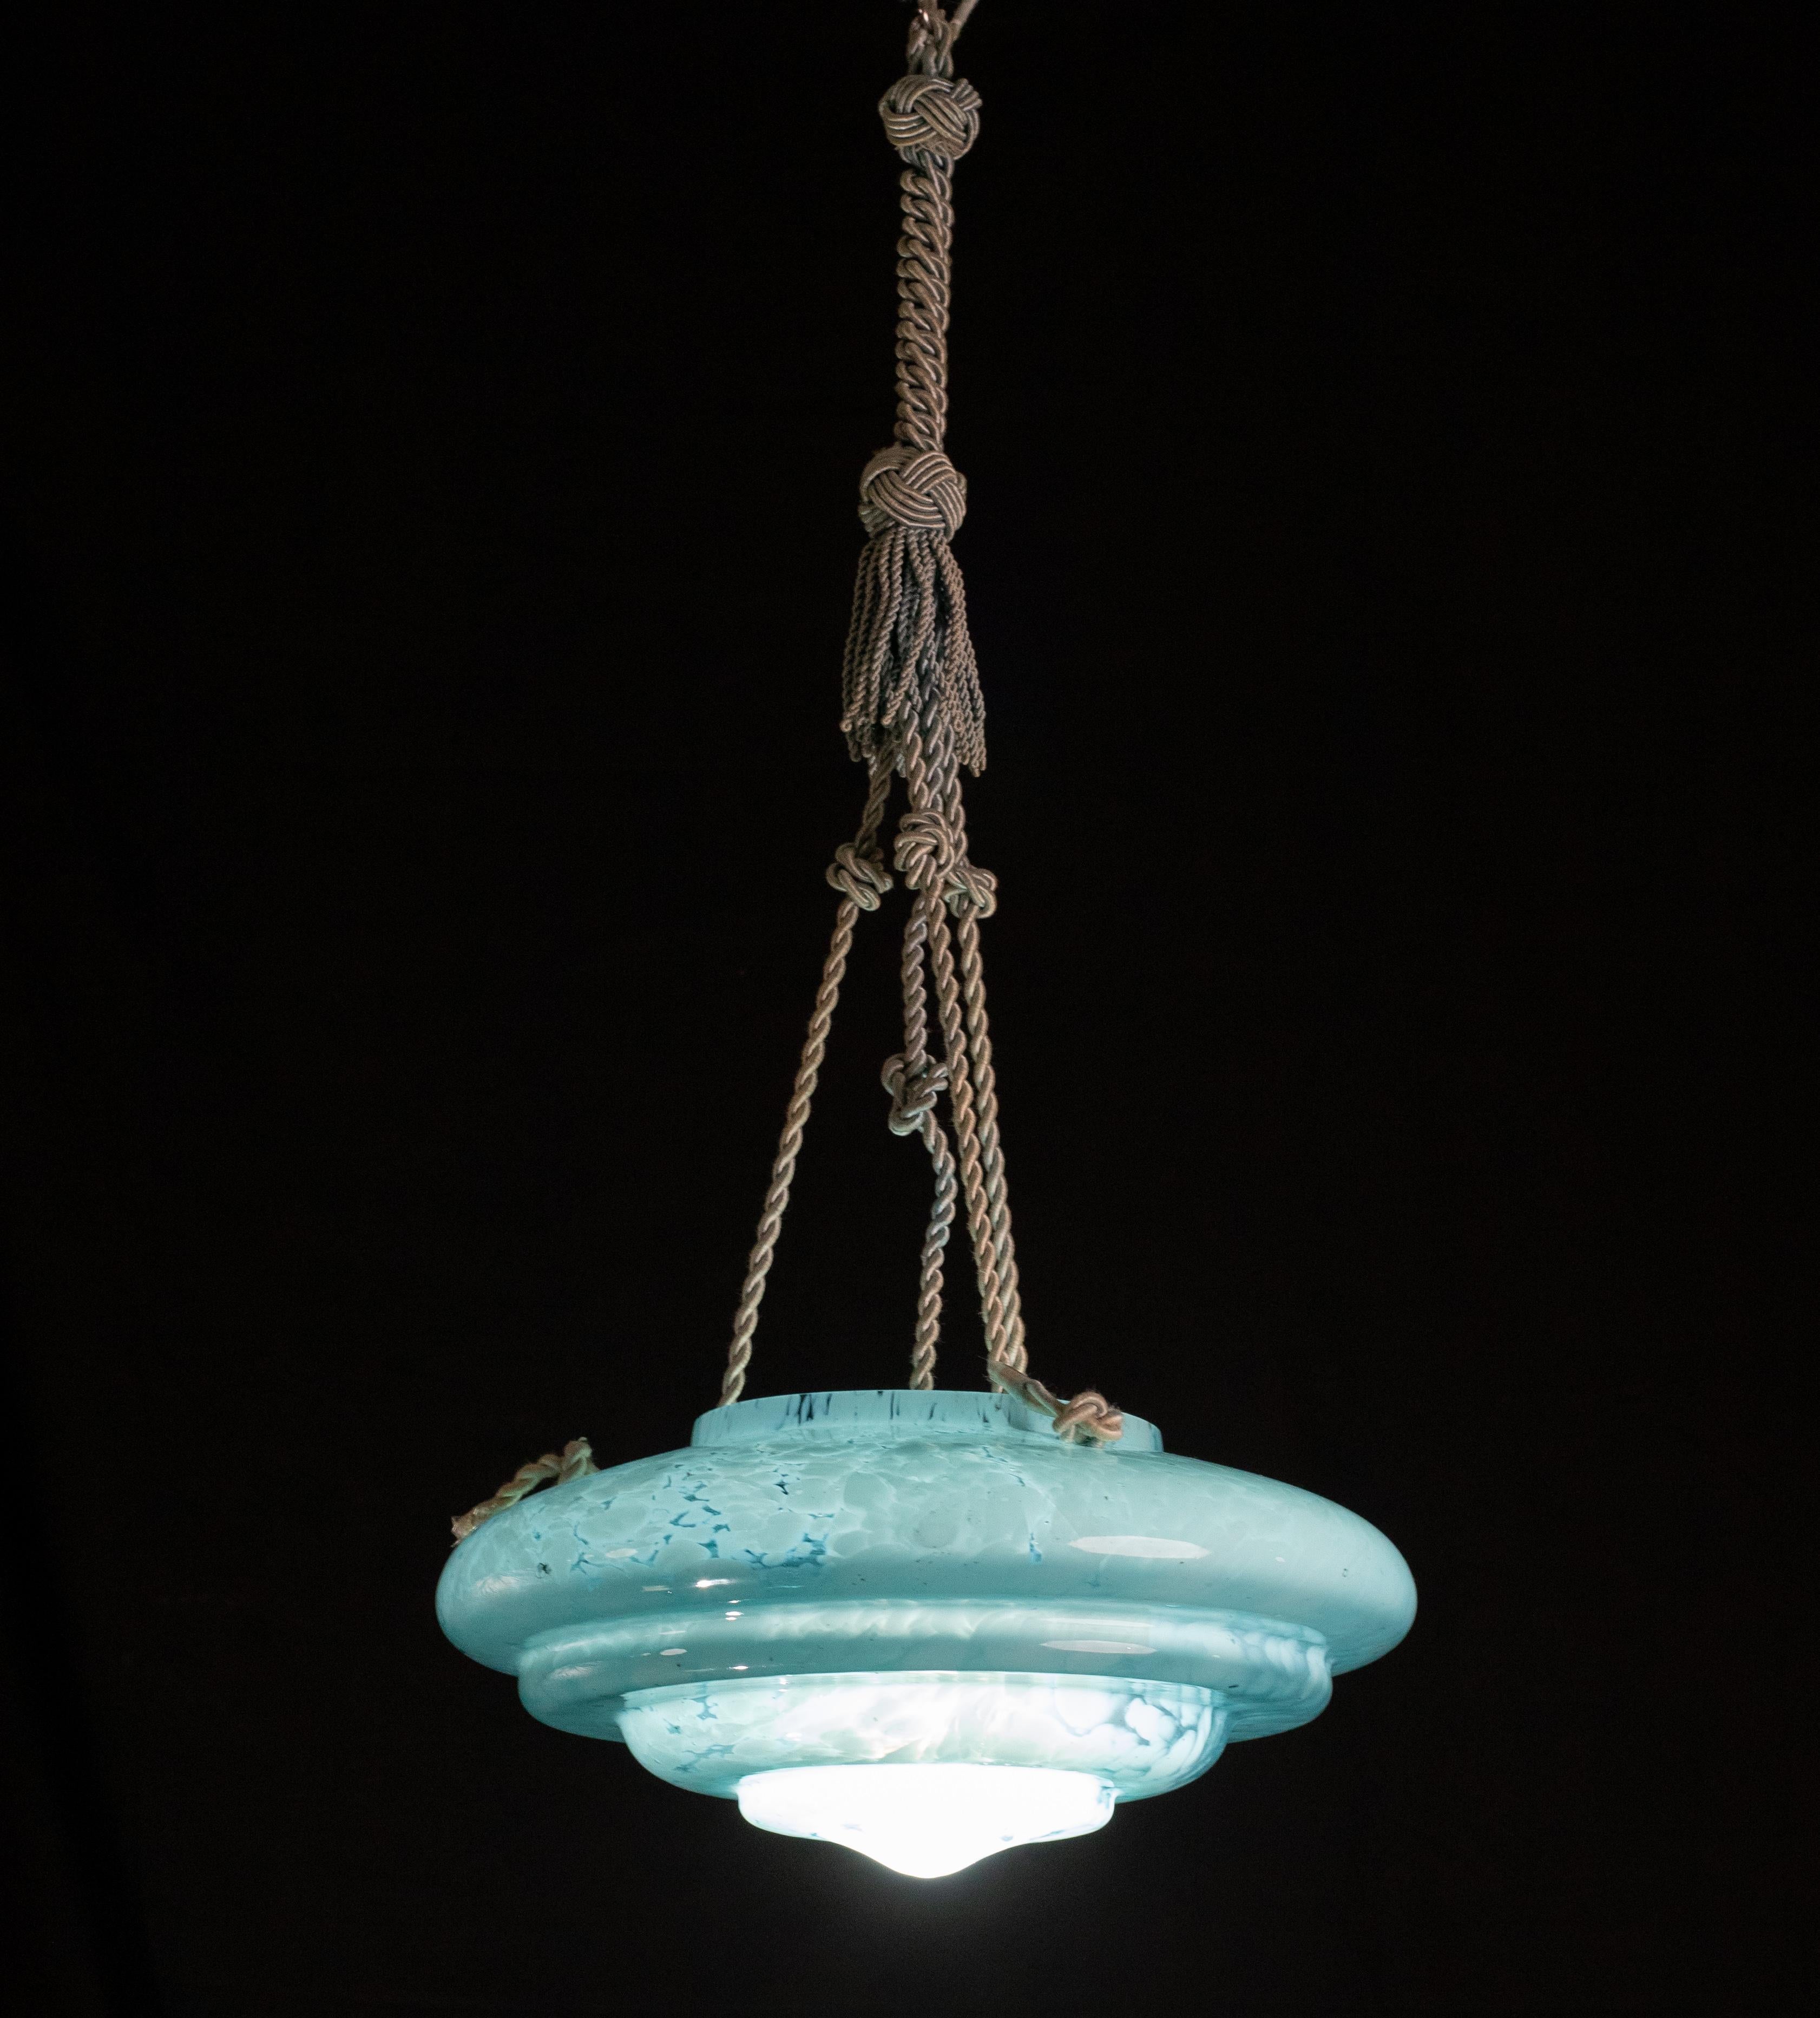 Superbe pendentif en verre de Murano de couleur aqua marina.

Style Art déco : période de fabrication 1940-1950.

Le disque du lustre est de couleur aigue-marine avec des reflets blancs suspendus aux trois cordes d'origine.

Une lampe e27.

Diamètre